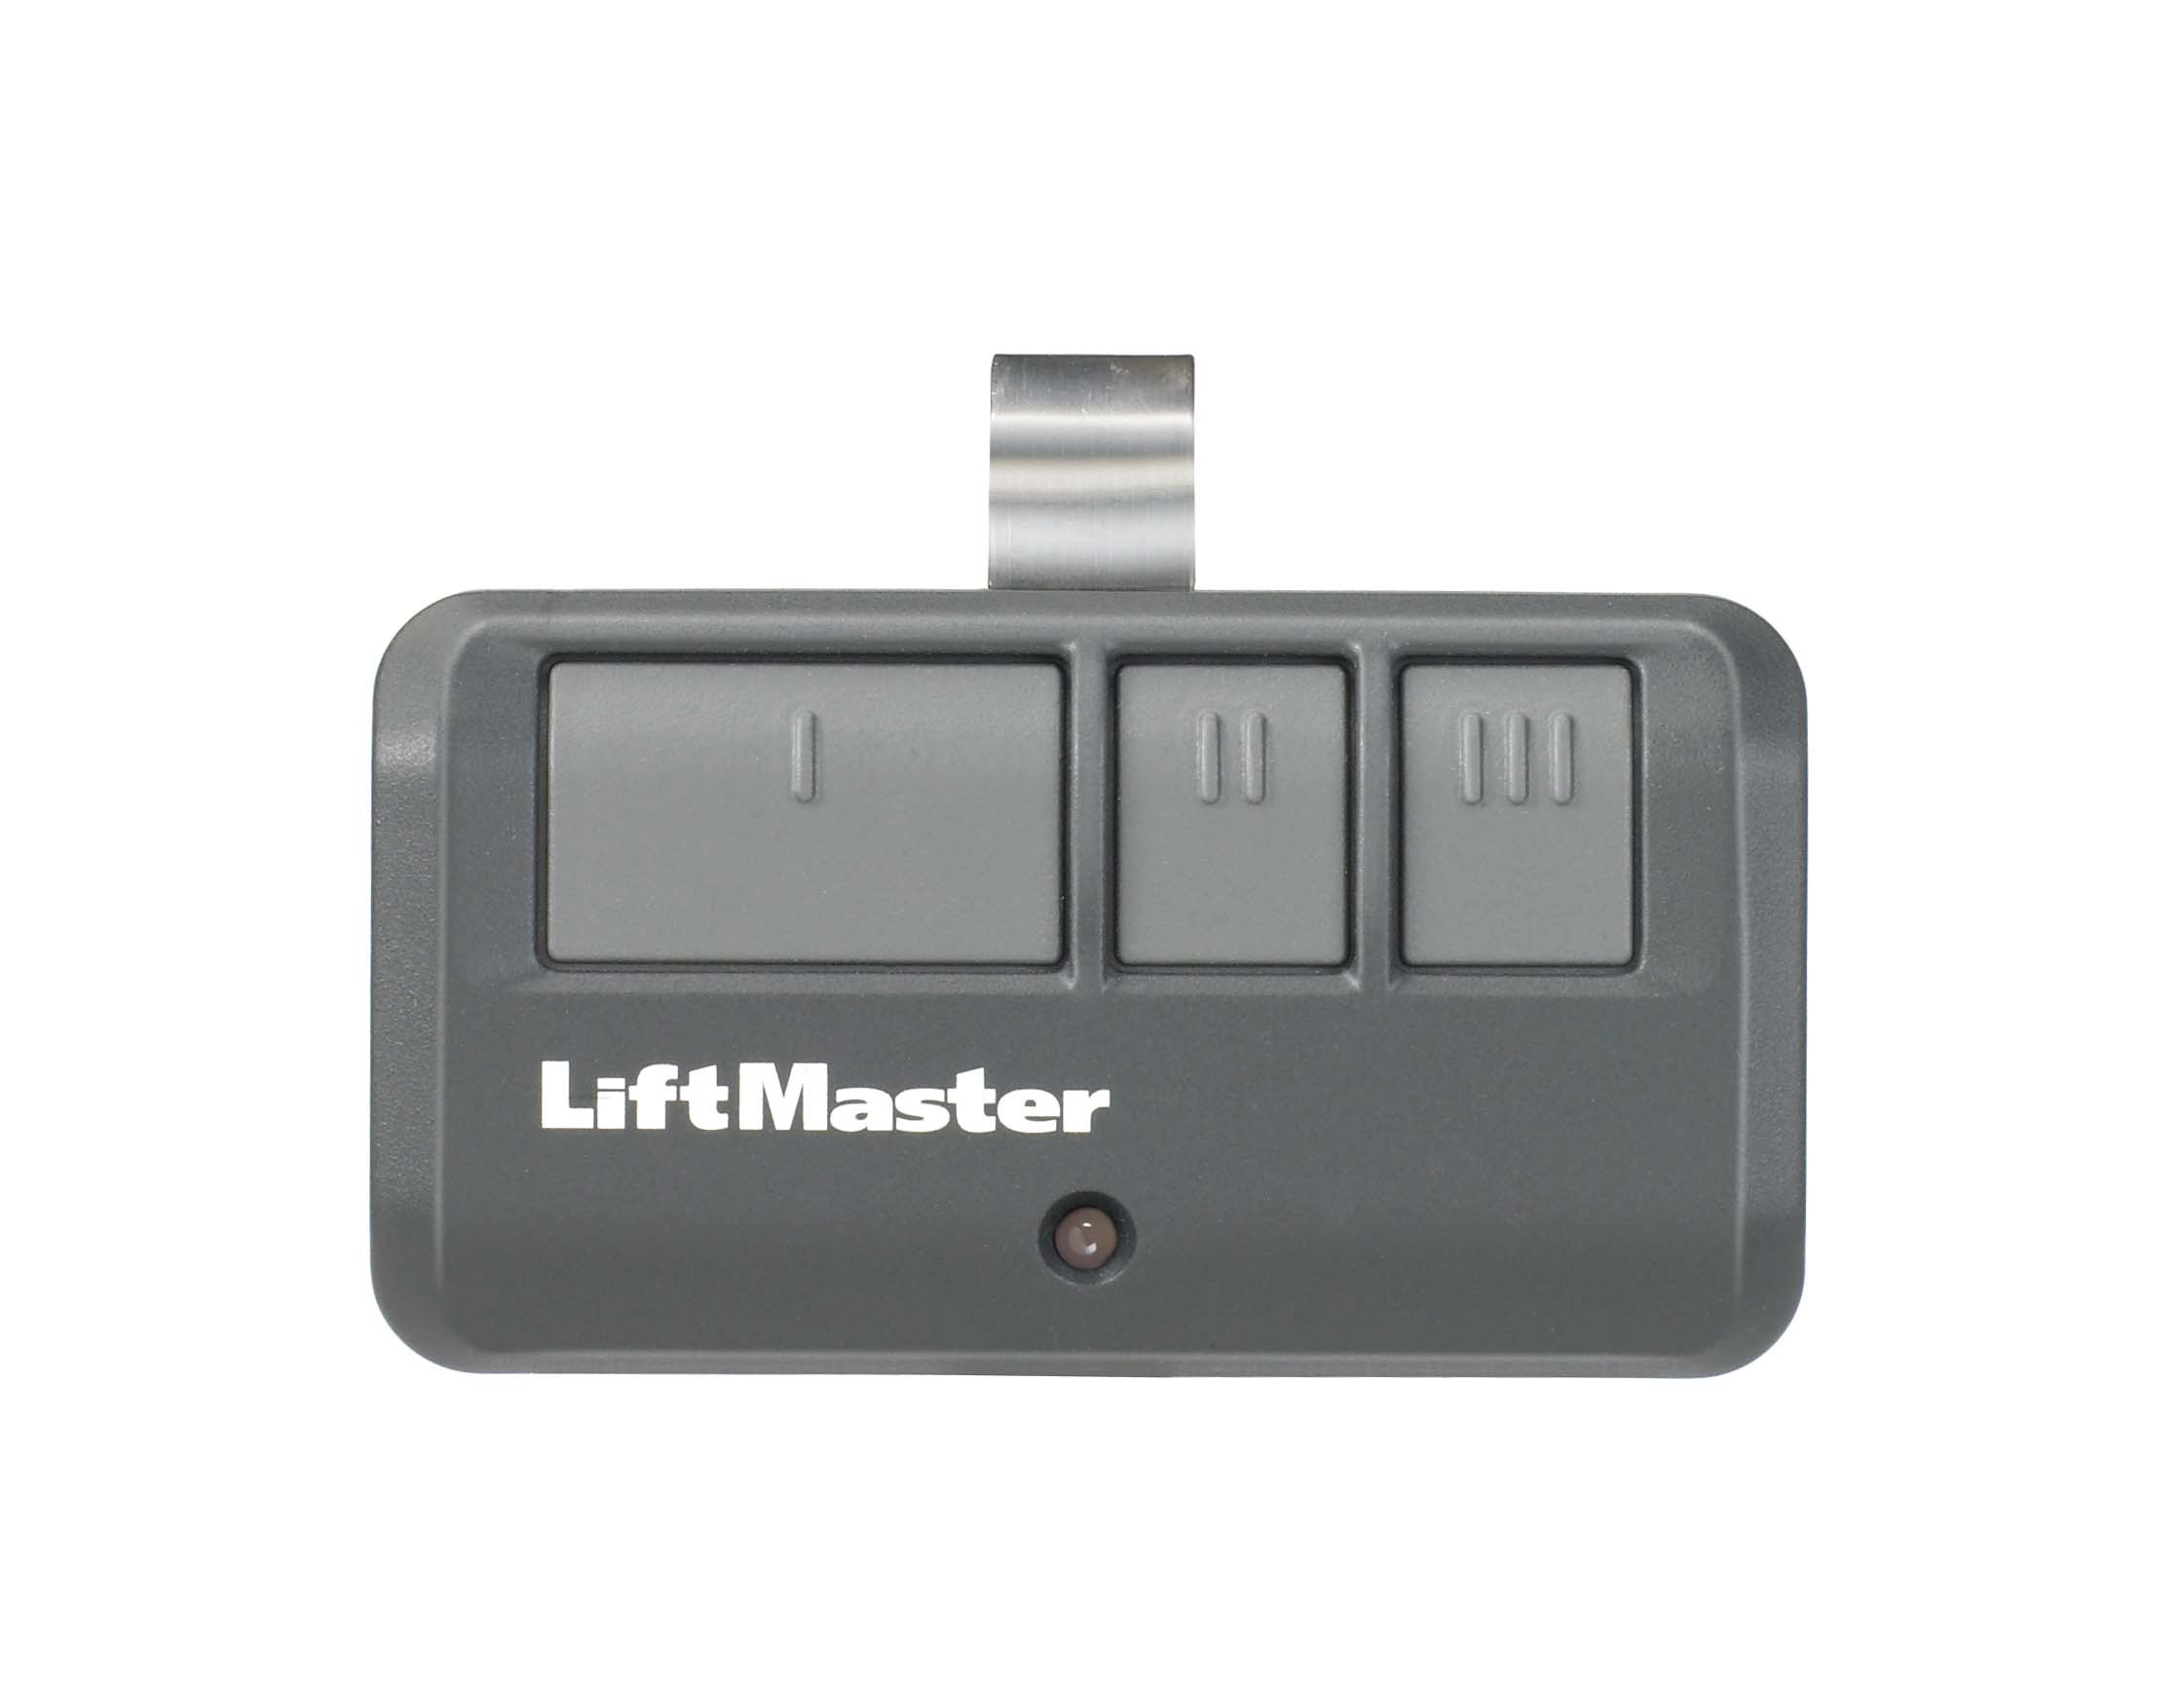 Programing Liftmaster Garage Door Openers
 How To Program The Liftmaster 893MAX Garage Door Remote